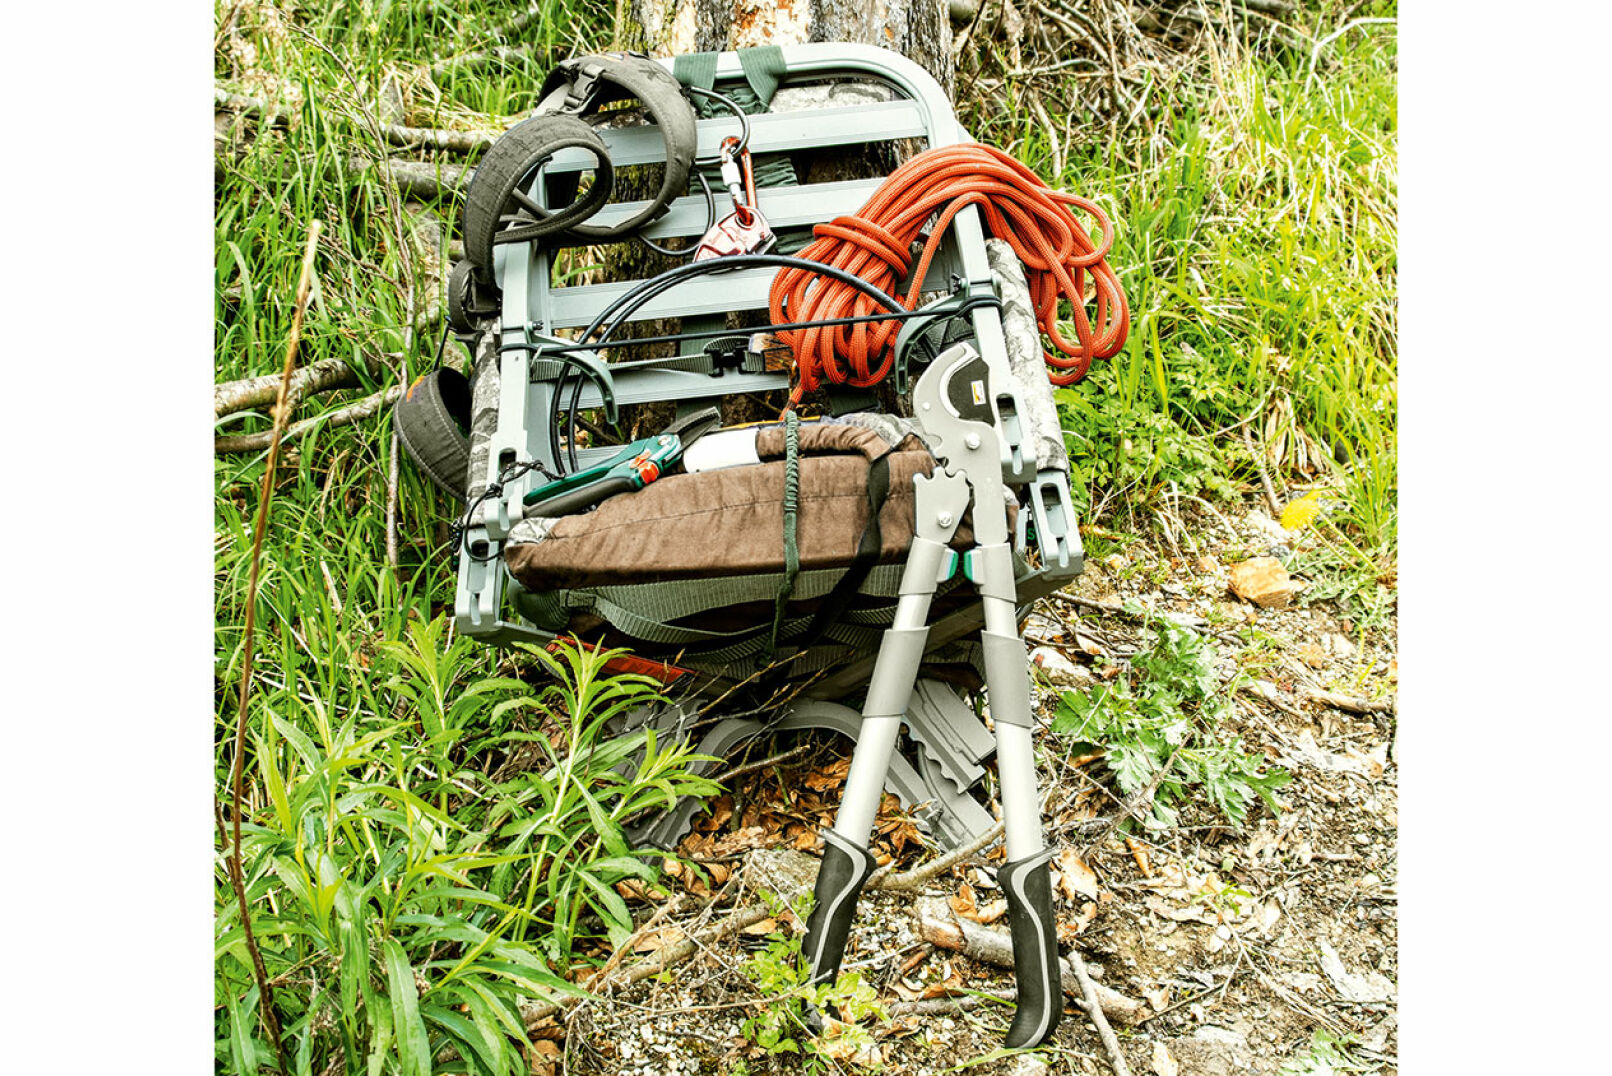 Klettersitz - Mit einer Baumschere kann bereits im Vorfeld entastet werden, um beim tatsächlichen Einsatz möglichst zügig und leise ­klettern zu können. - © Martin Grasberger